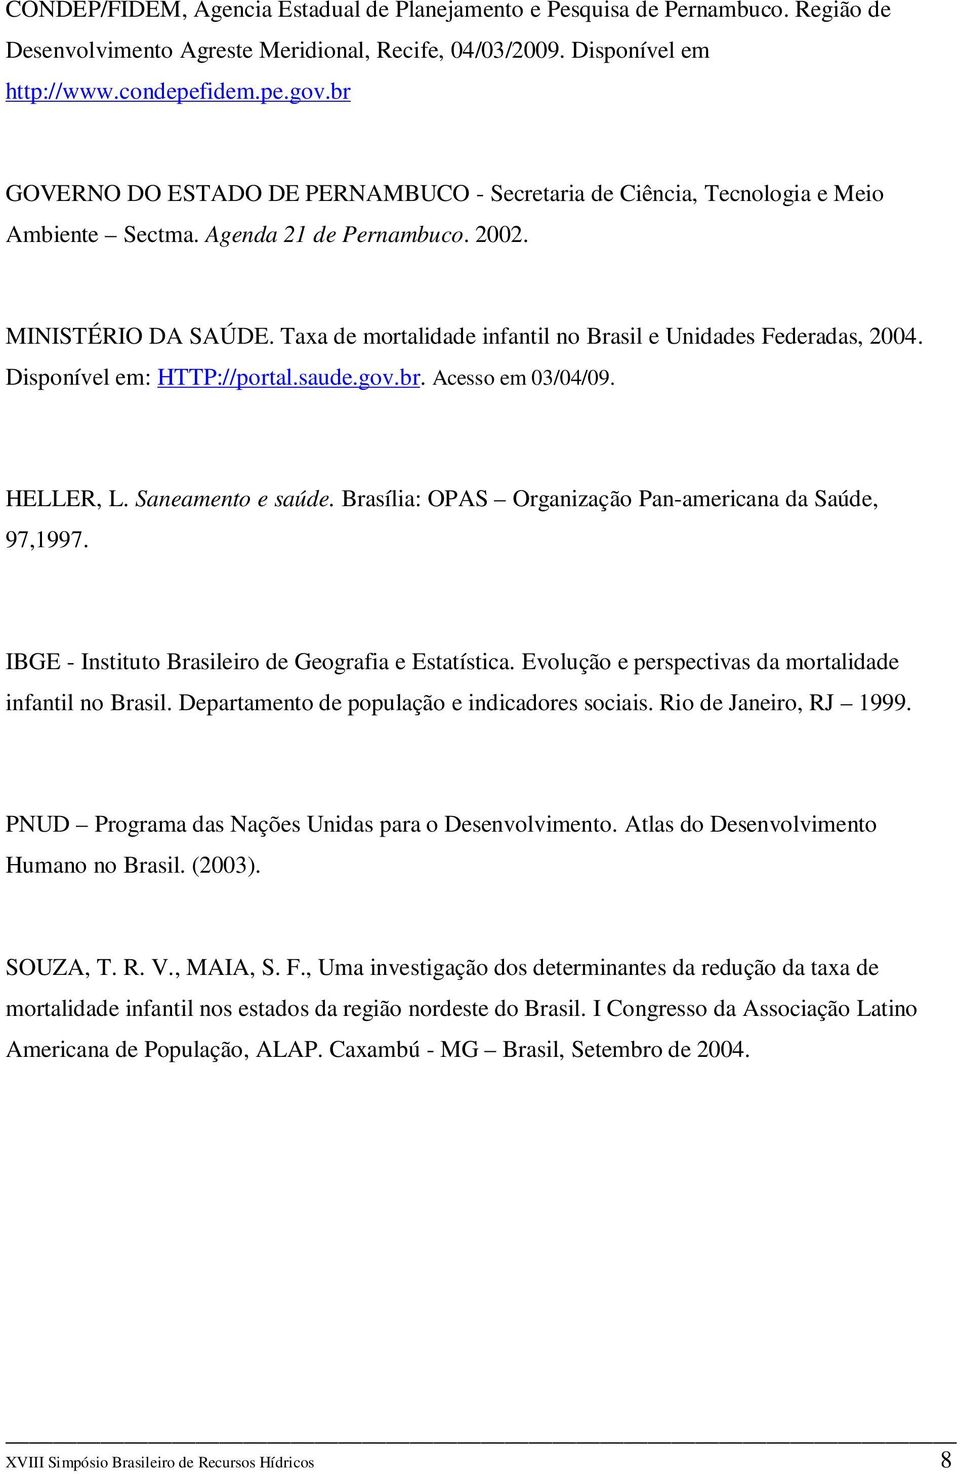 Taxa de mortalidade infantil no Brasil e Unidades Federadas, 2004. Disponível em: HTTP://portal.saude.gov.br. Acesso em 03/04/09. HELLER, L. Saneamento e saúde.